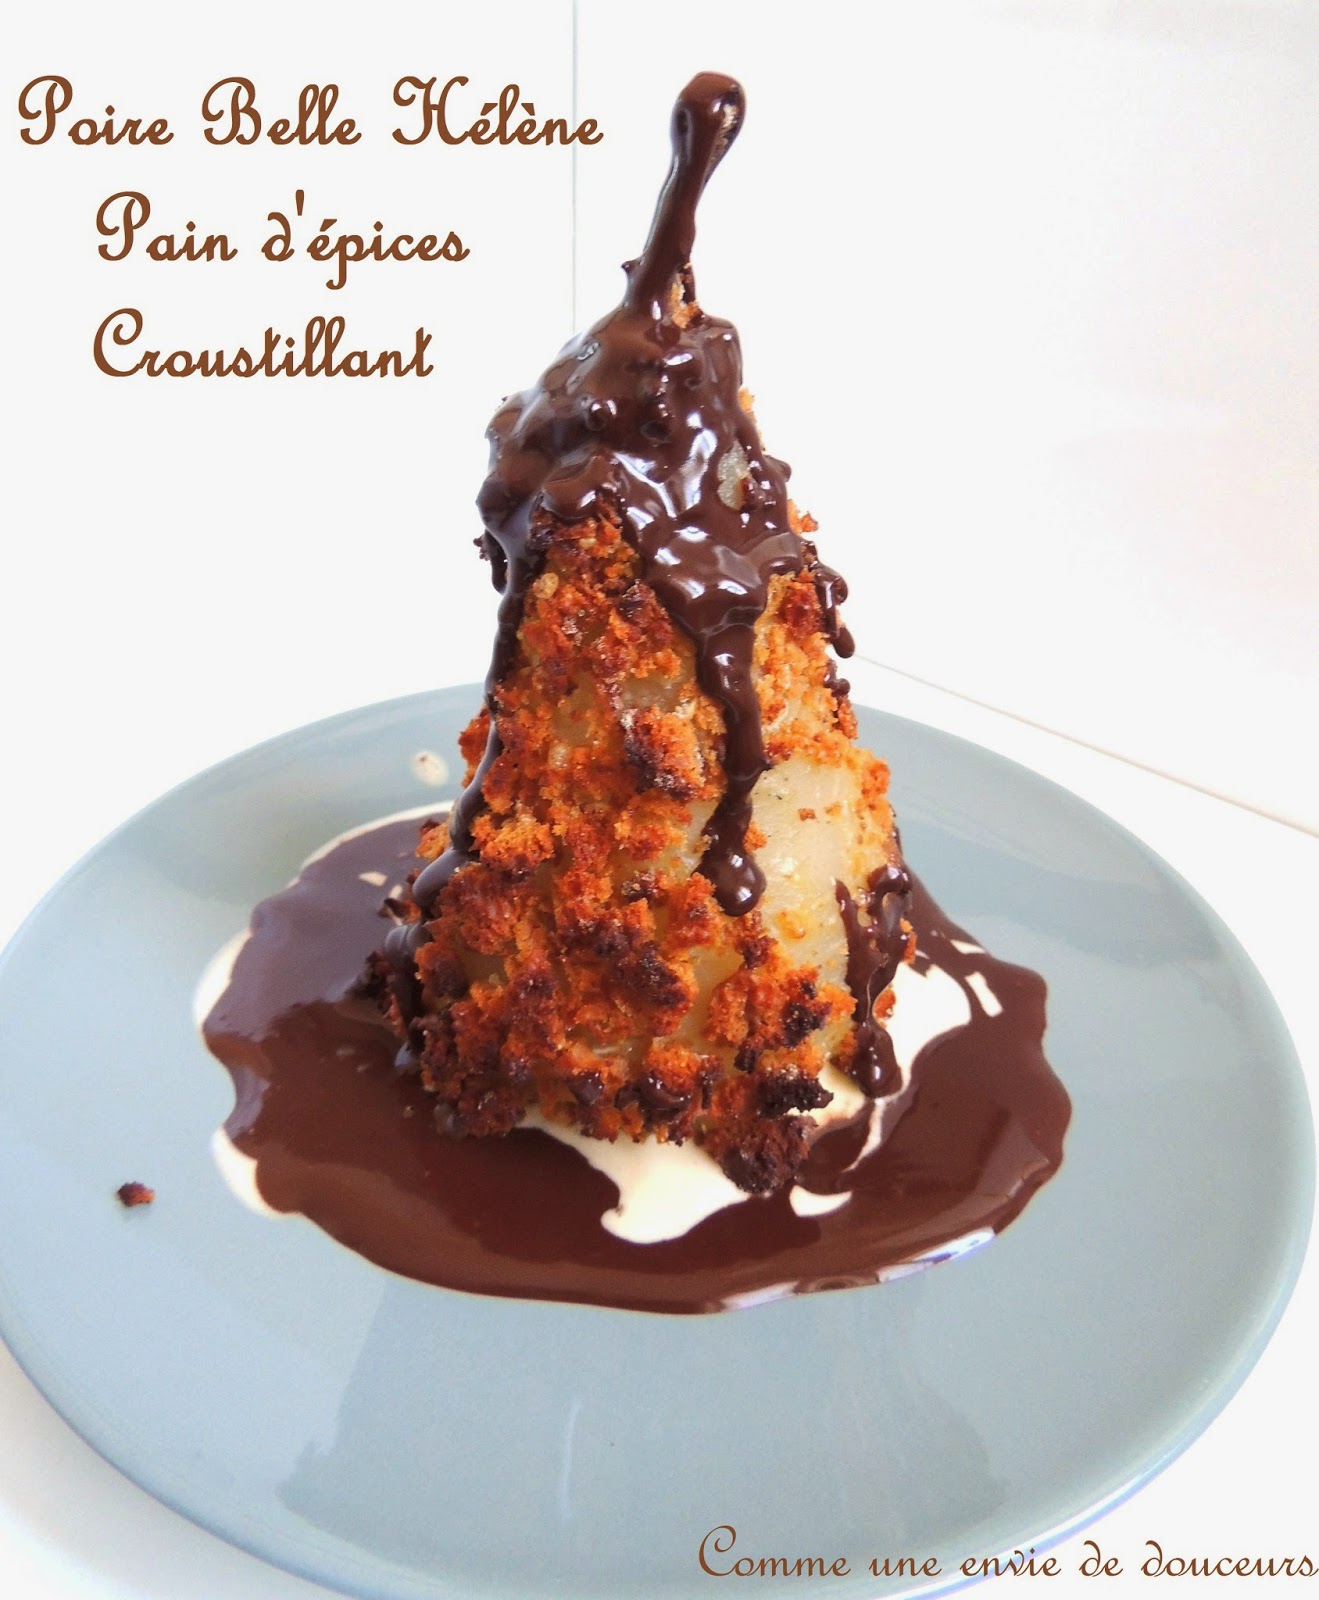 Poire belle hélène croustillante – Crunchy poached pears ice cream & chocolate